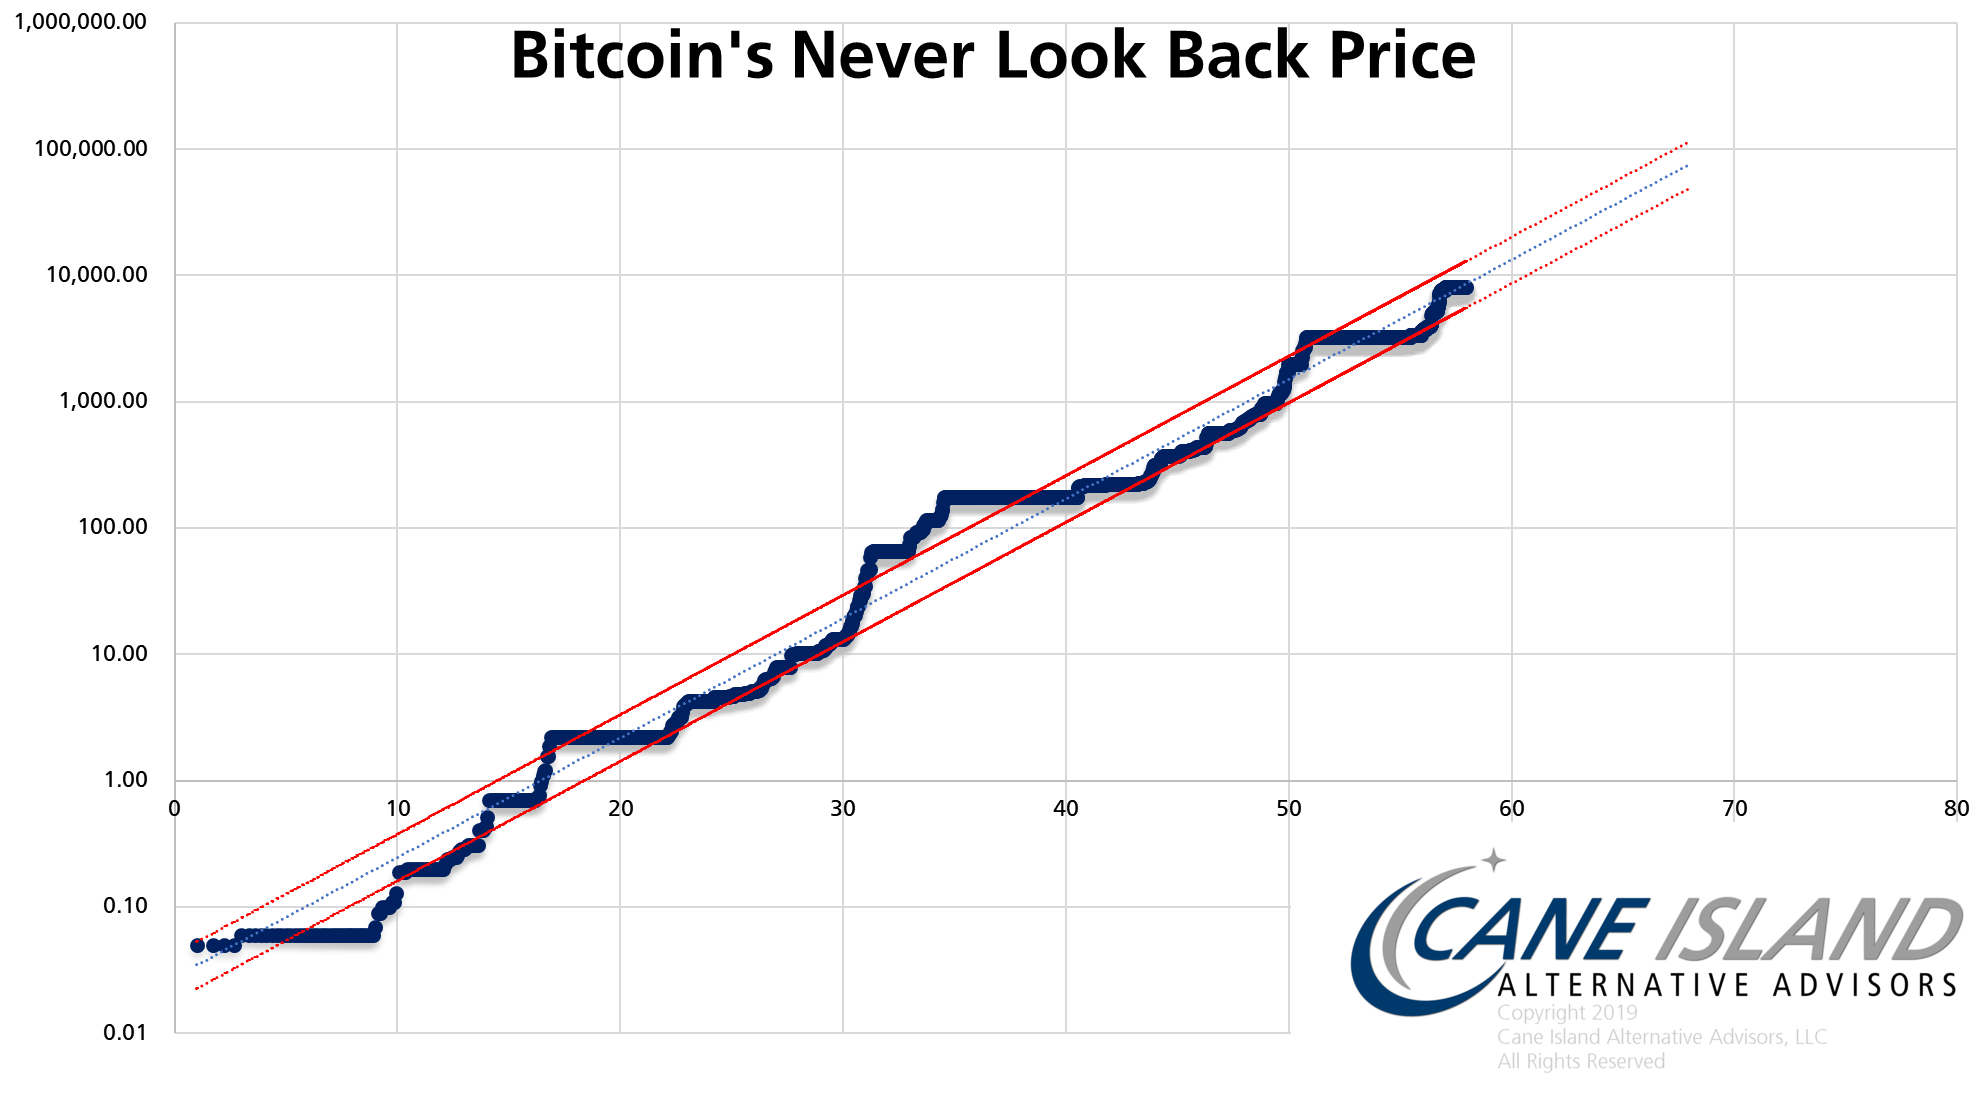 Bitkoino kainos korekcija – didžiausia per 10 mėnesių - Verslo žinios